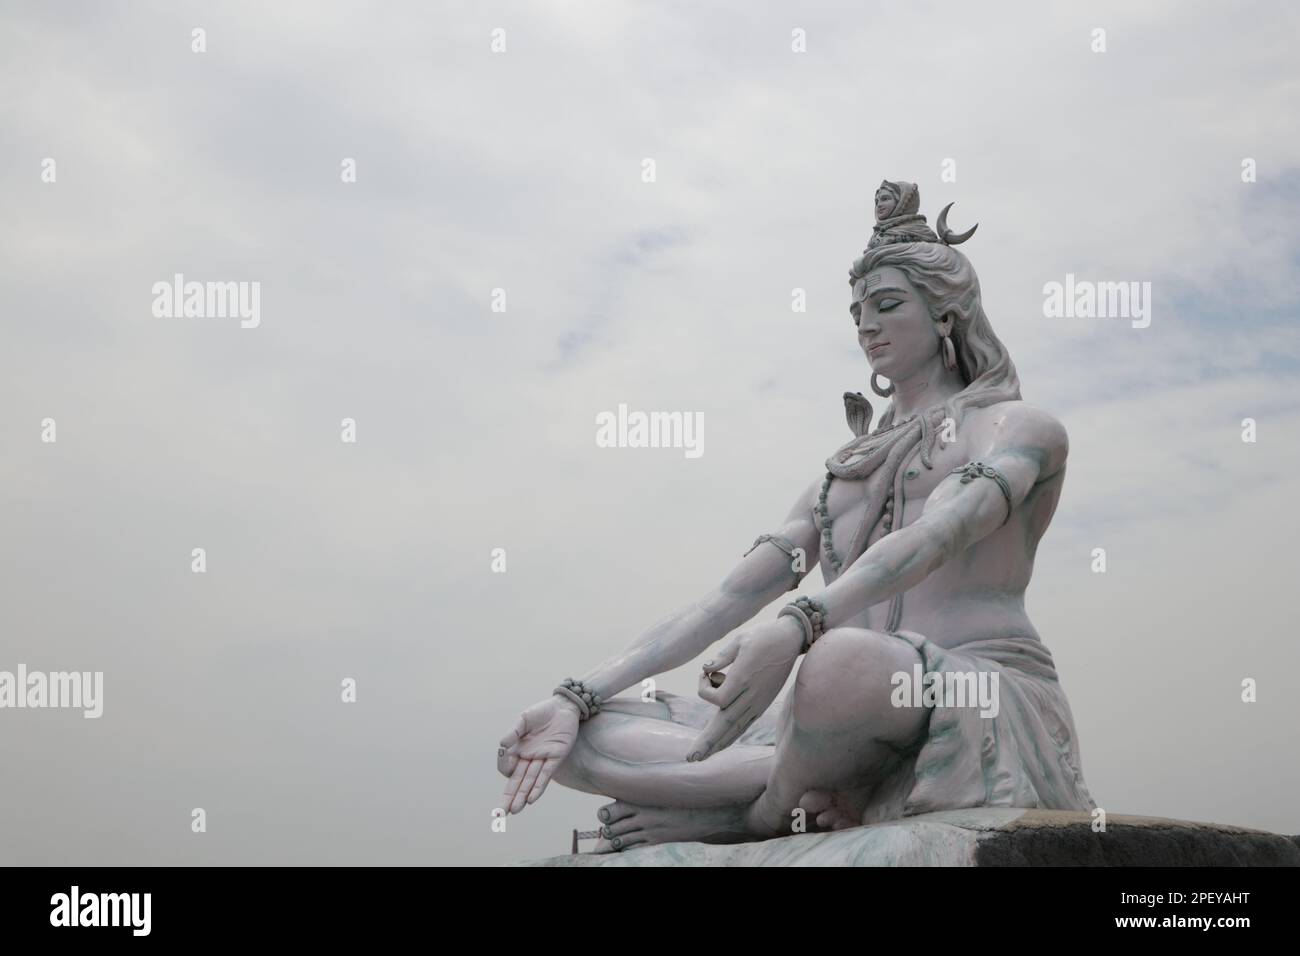 Statue du seigneur Shiva. L'idole hindoue près de l'eau du Gange River, Rishikesh, Inde. Le premier Dieu hindou Shiva. Lieux sacrés pour les pèlerins à Rishikesh. Banque D'Images